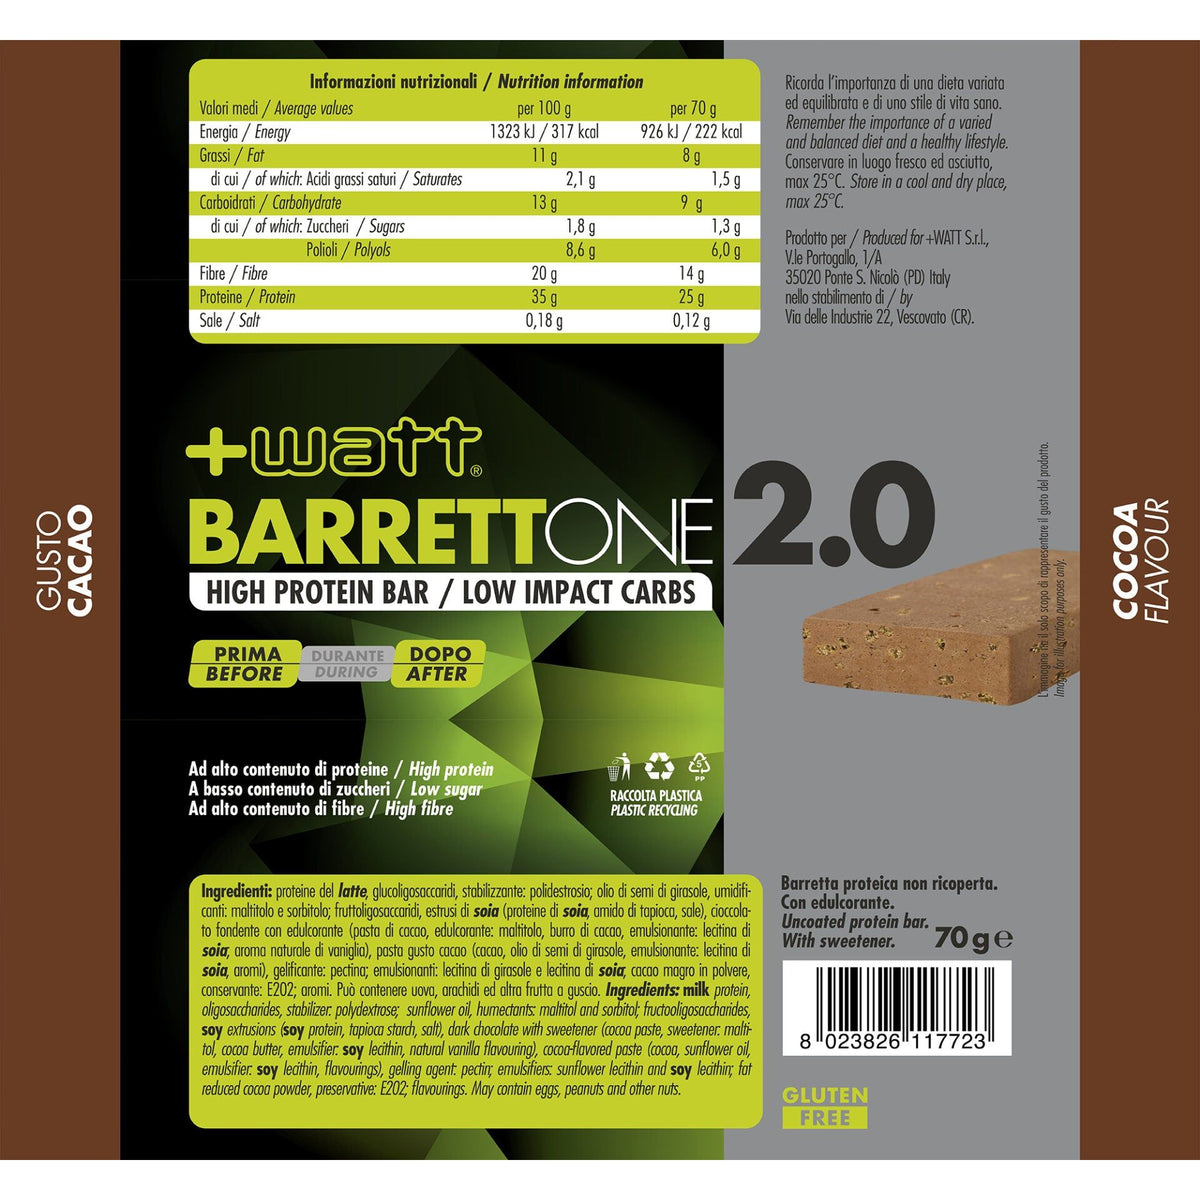 Barrettone 2.0 - barretta 70g - +WATT